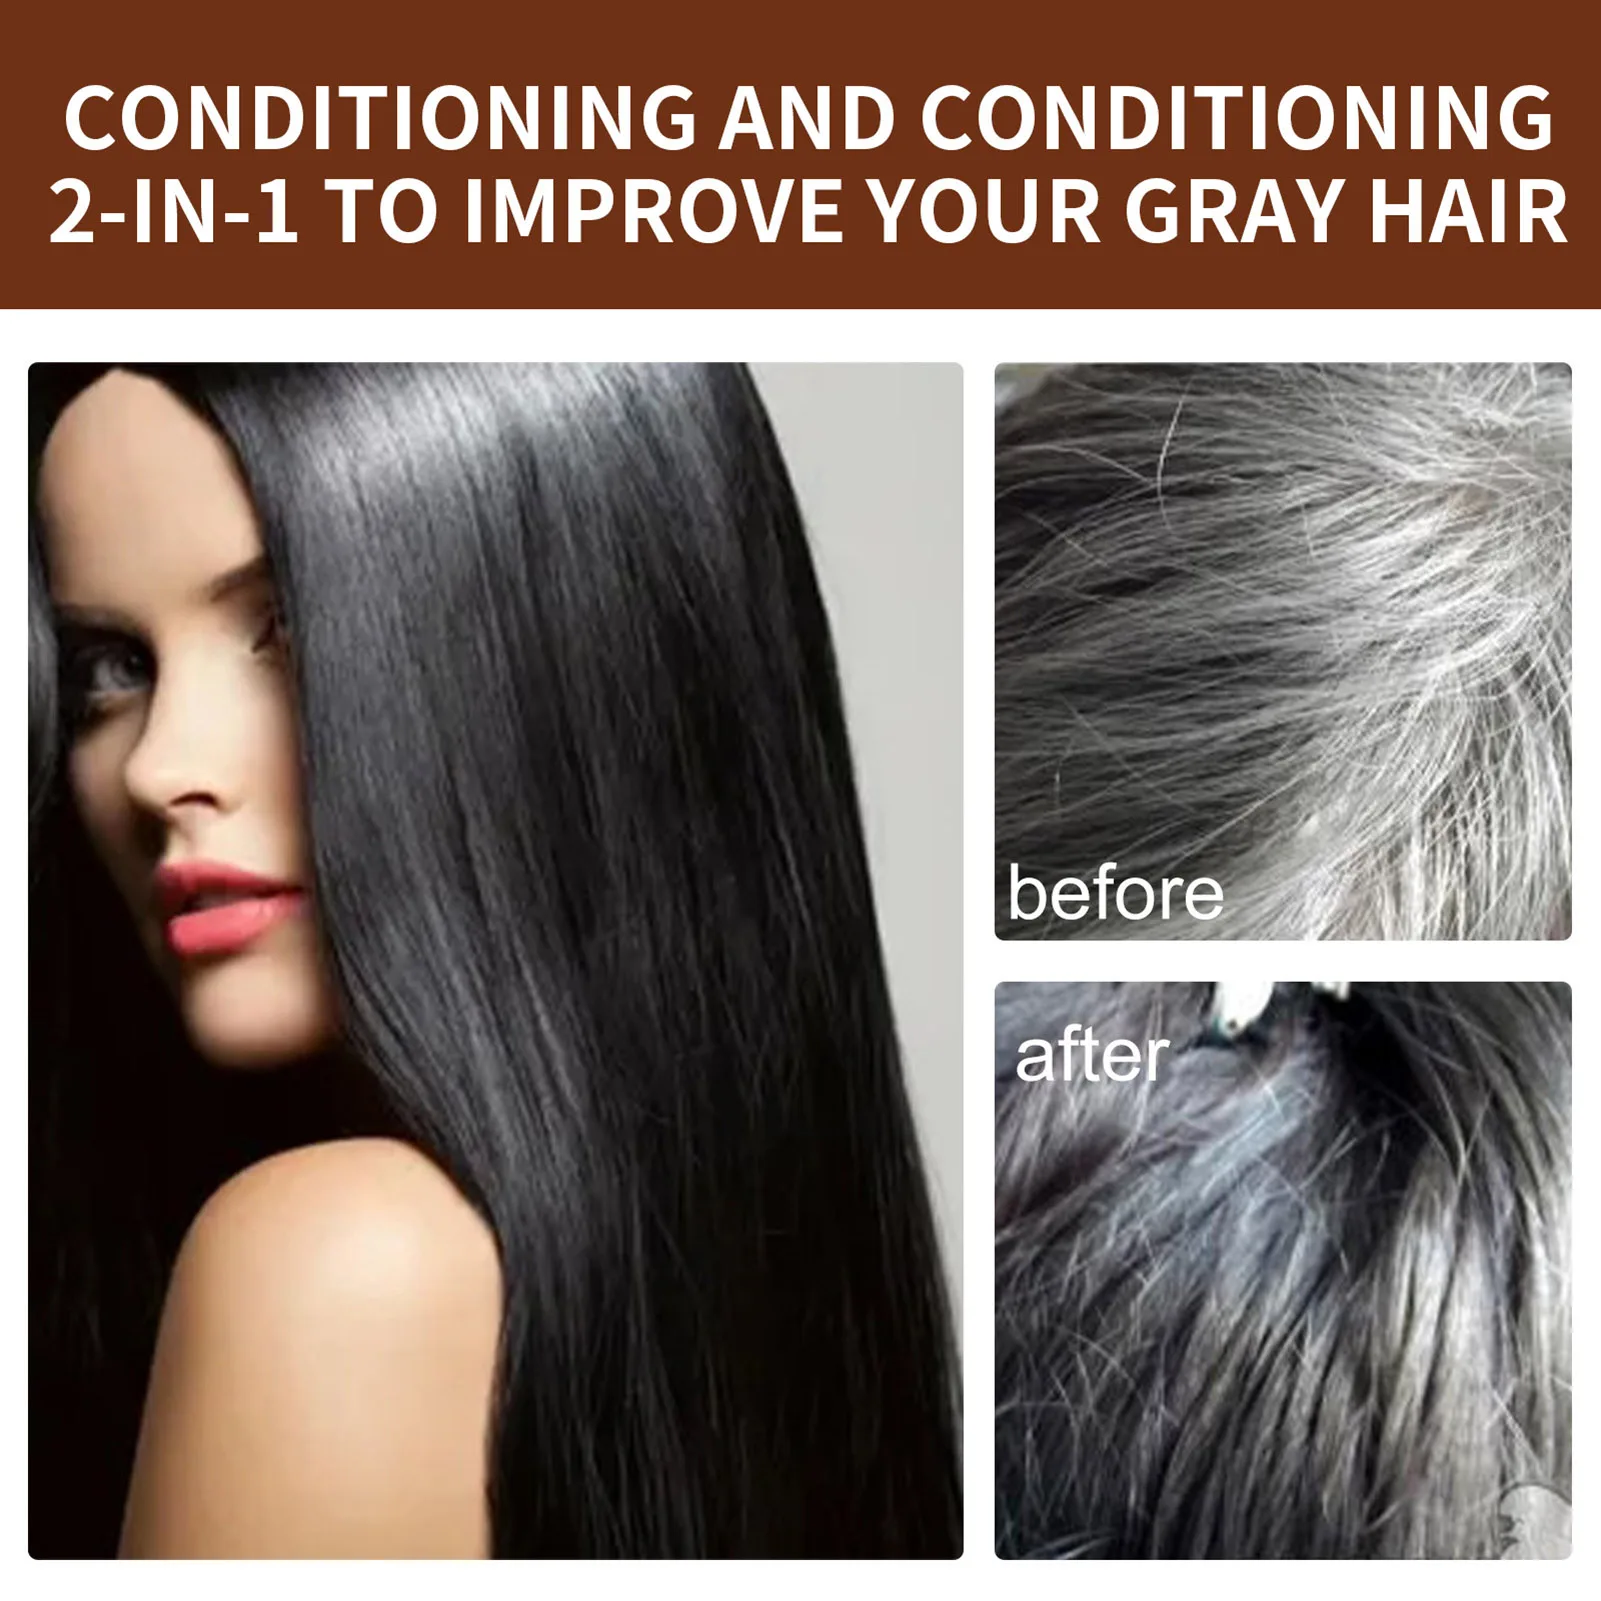 

Шампунь для волос, эссенция Polygonum, шампунь для затемнения волос, мыло, натуральный органический шампунь для волос, очищение серых волос